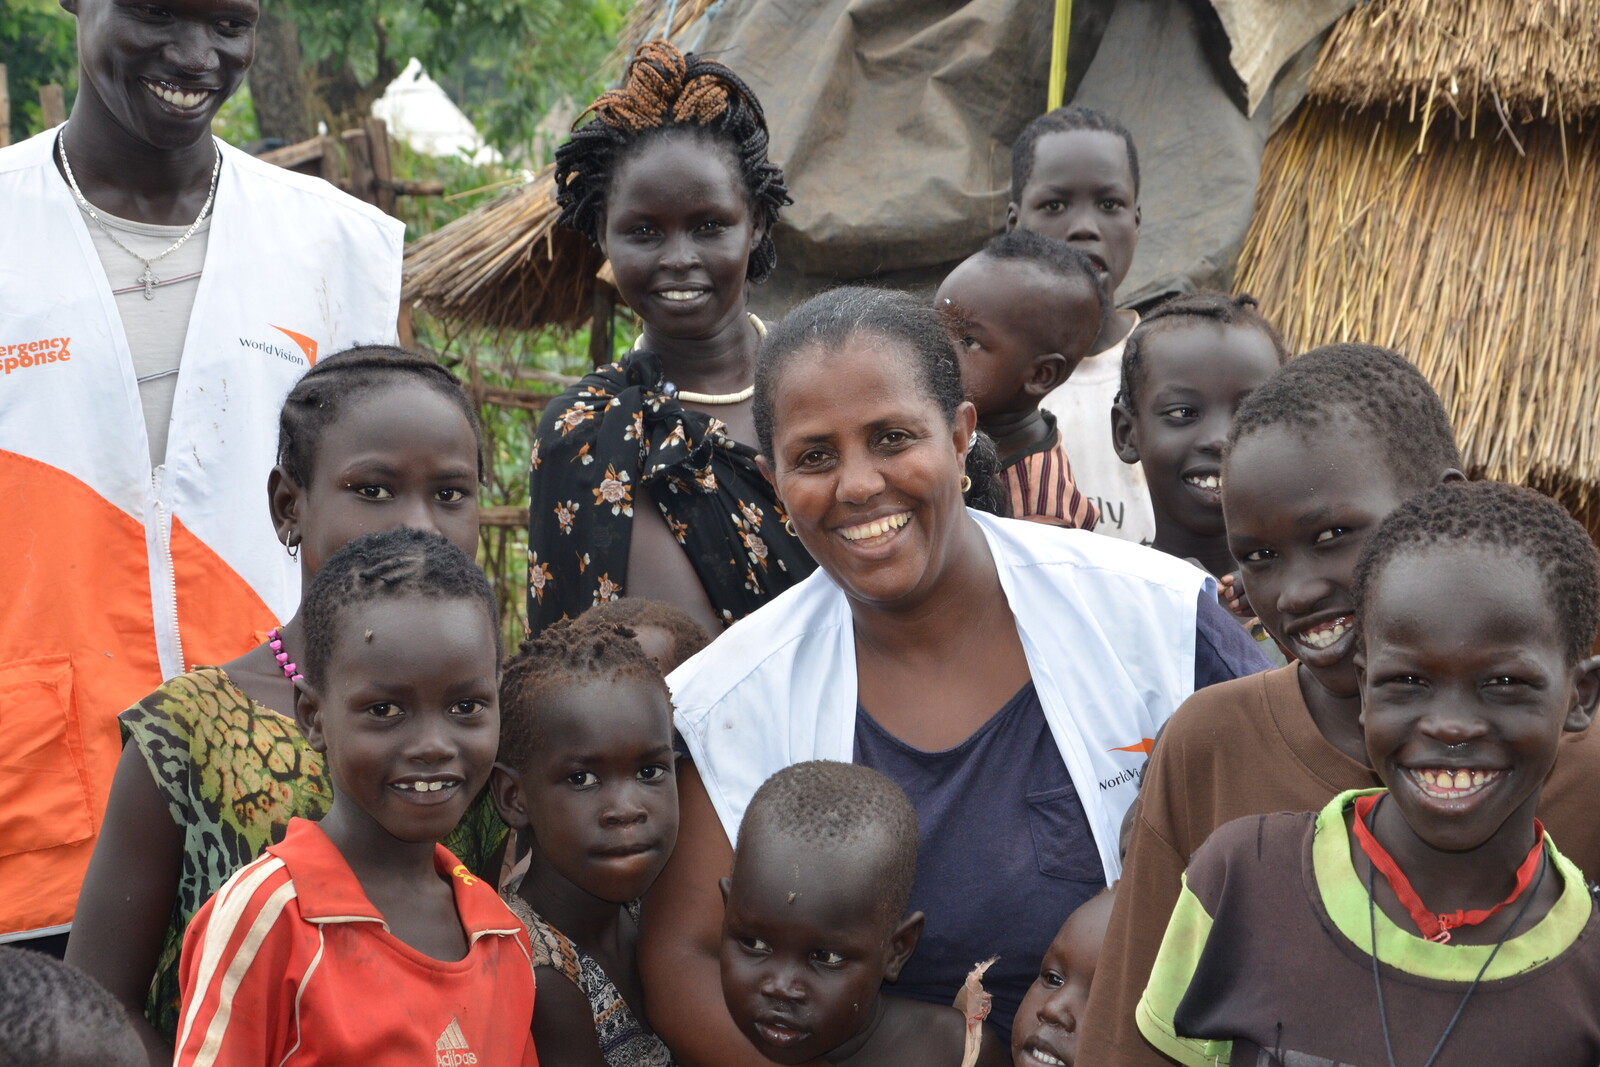 Tafessesch Tessema arbeitet mit World Vision in Äthiopiens größtem Flüchtlingslager.